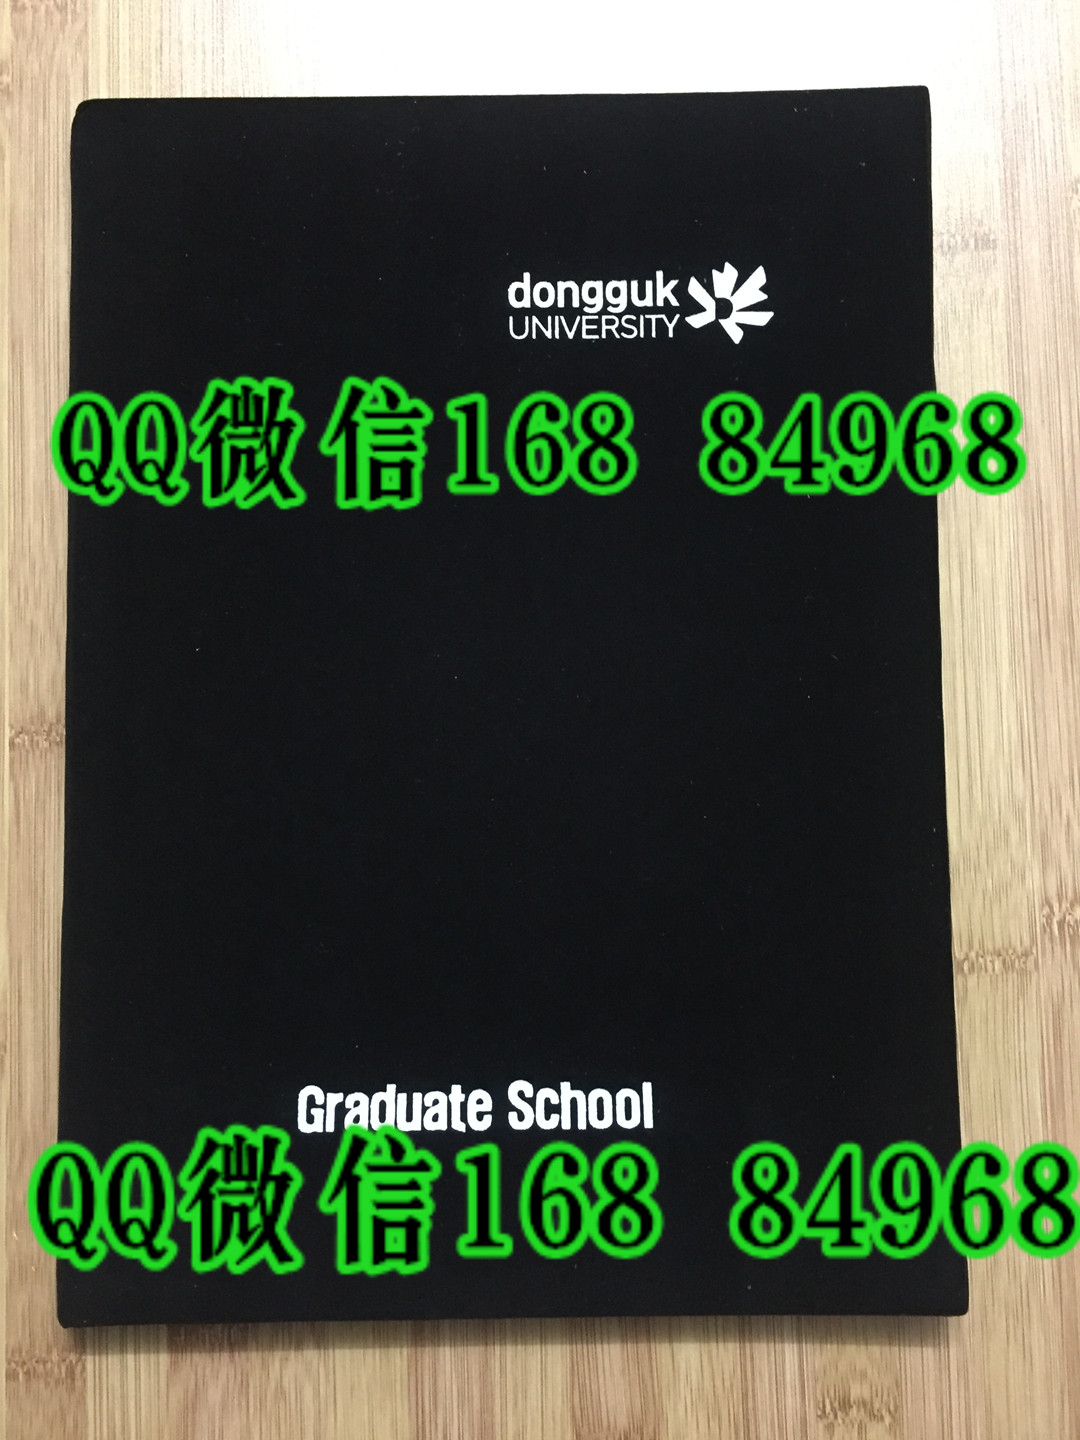 开模定制韩国东国大学毕业证外壳封皮，dongguk university diploma Cover